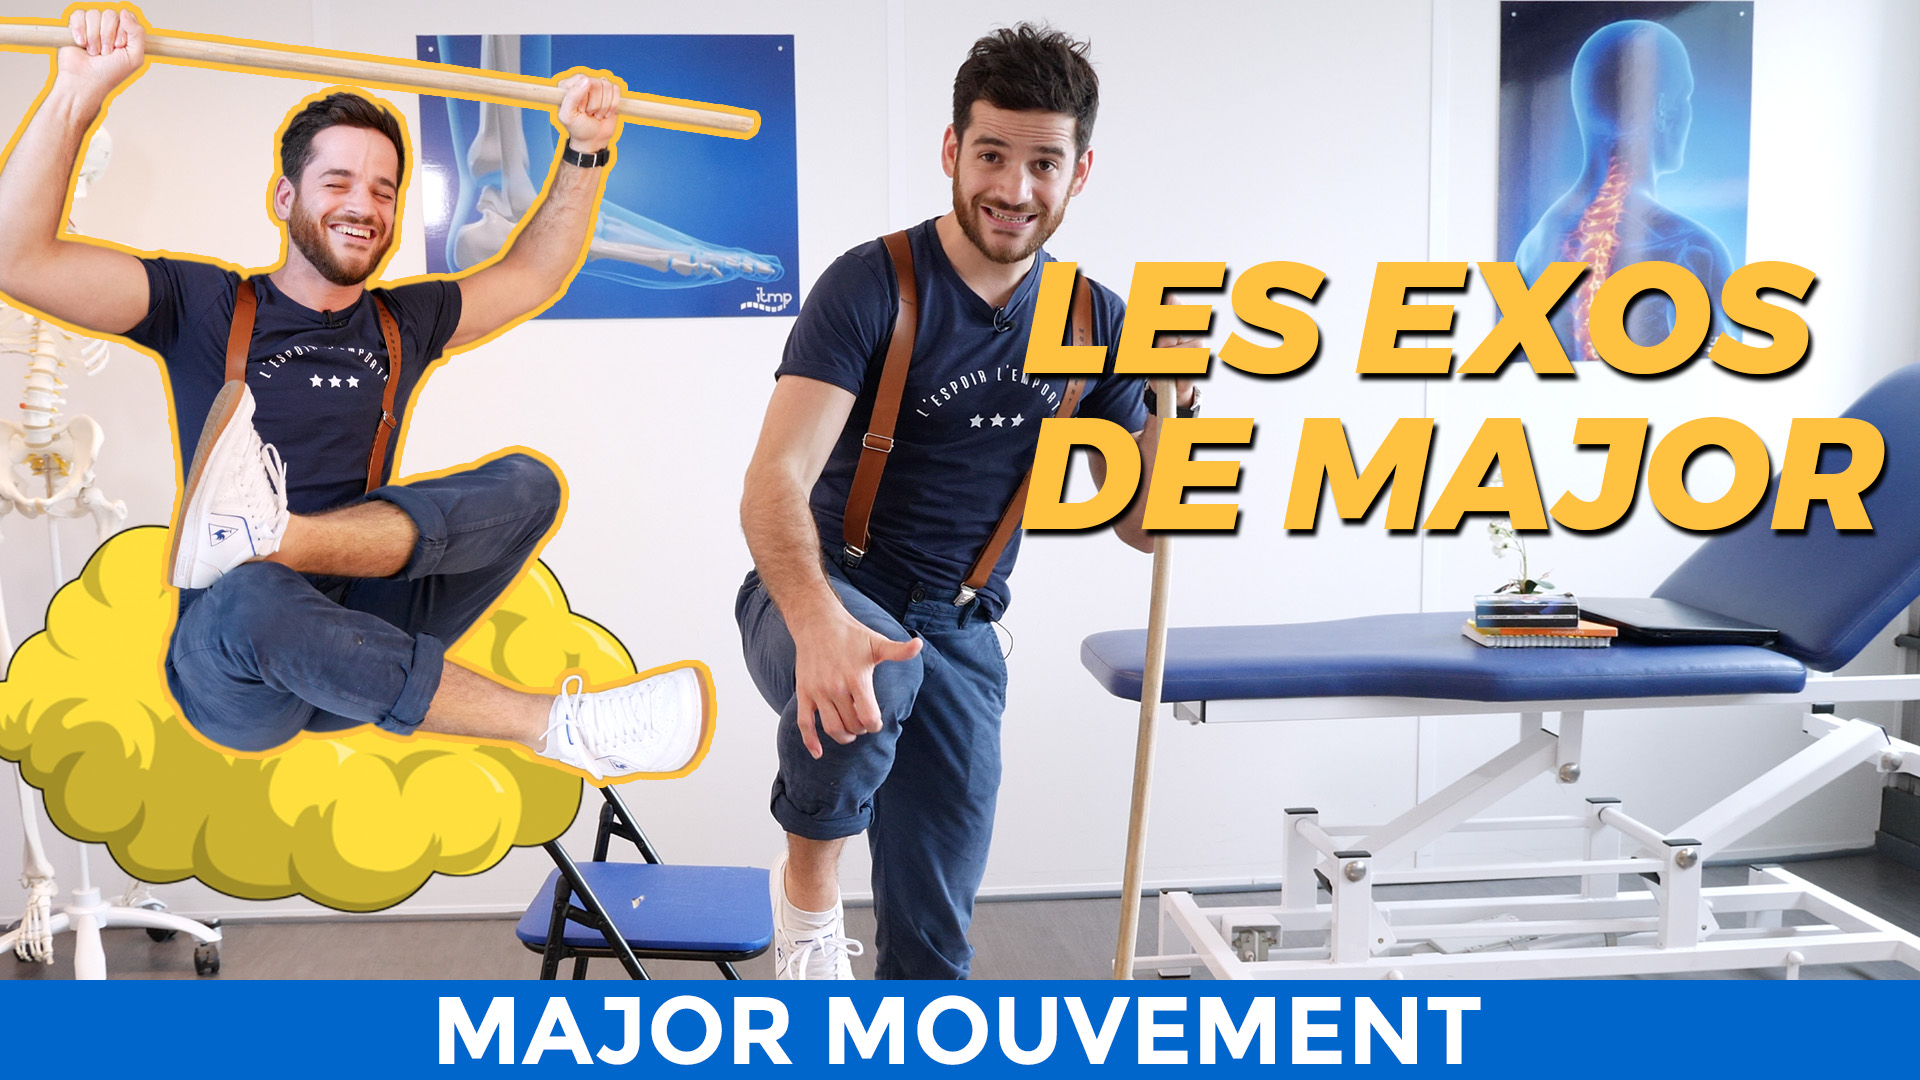 Major Mouvement - 100 exos  Institut de Thérapie Manuelle et de  Physiothérapie